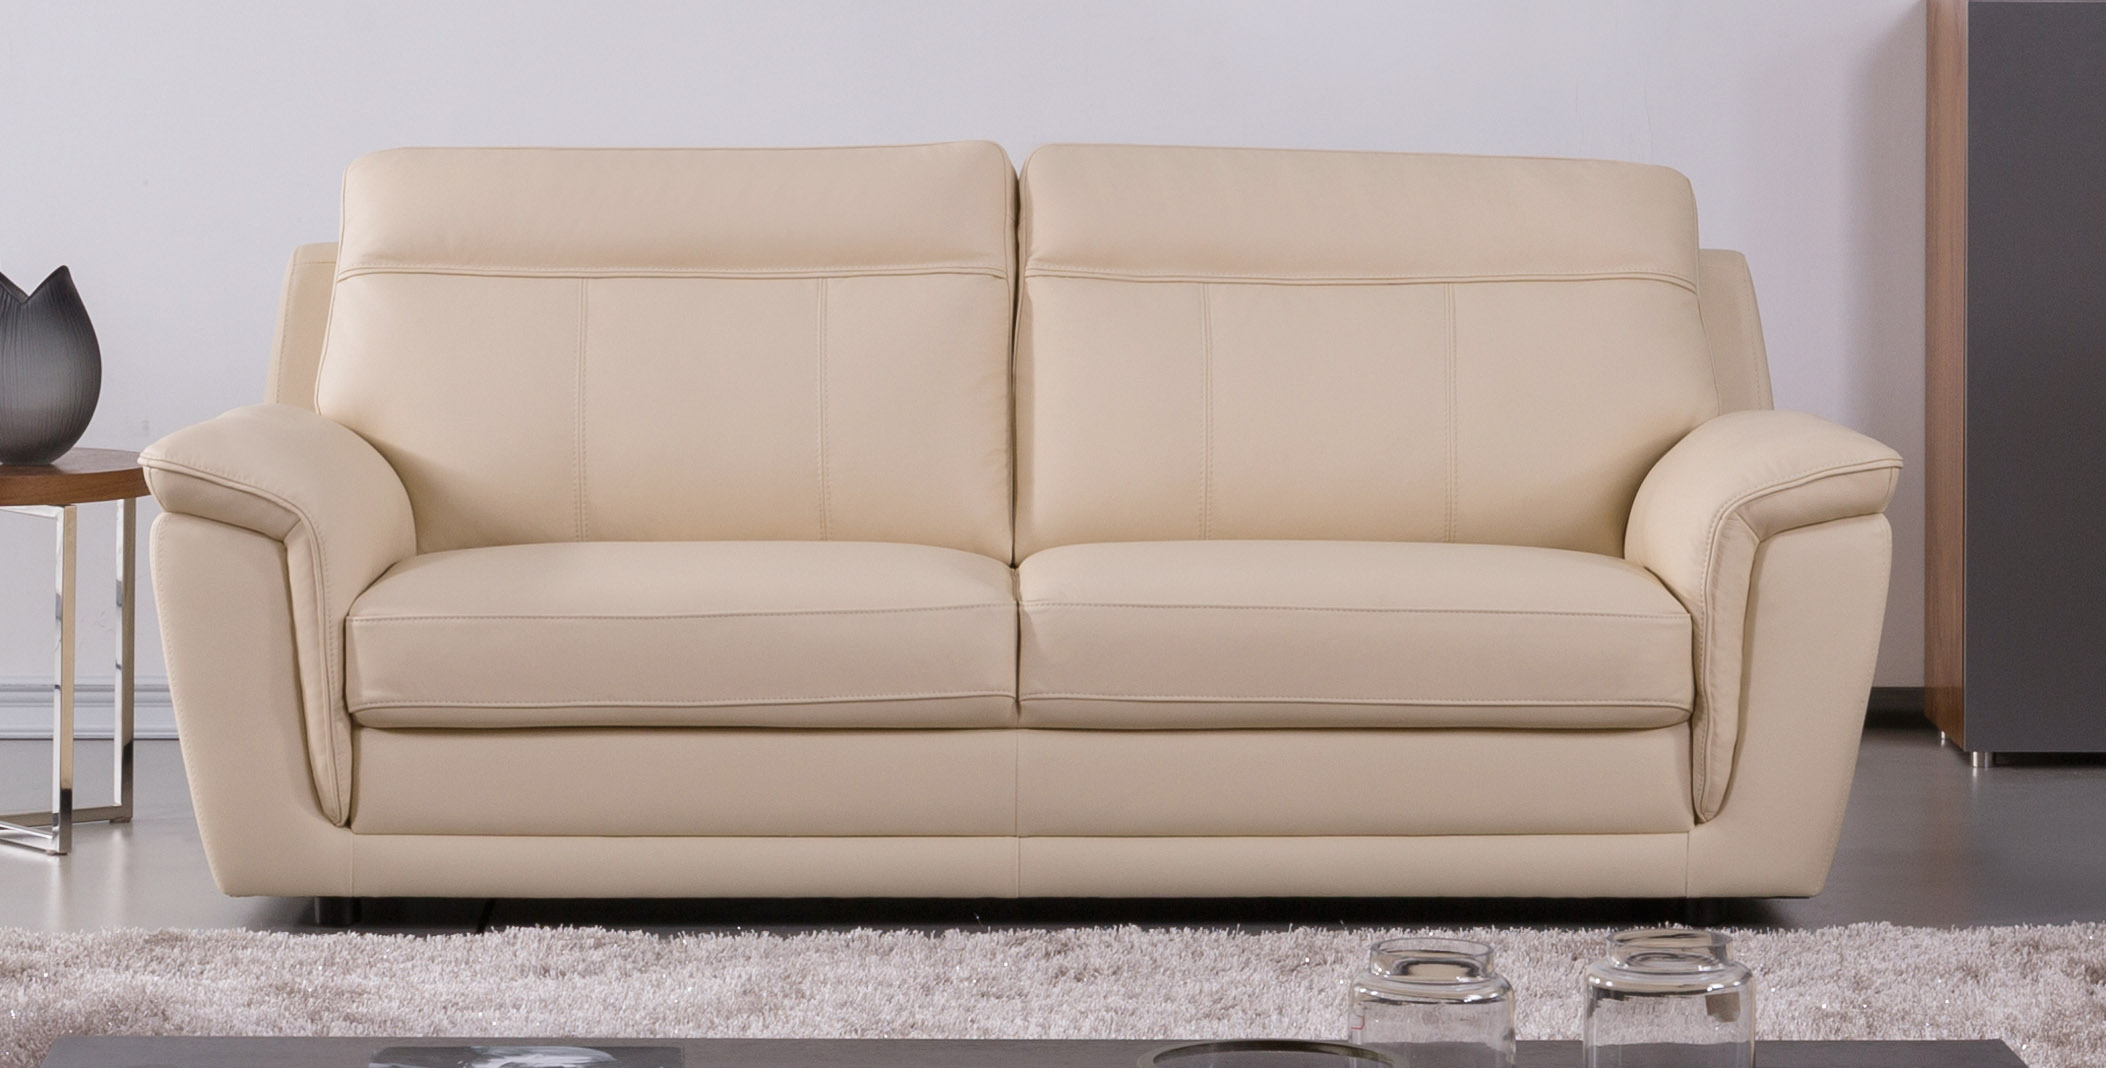 italian leather sofa dubai